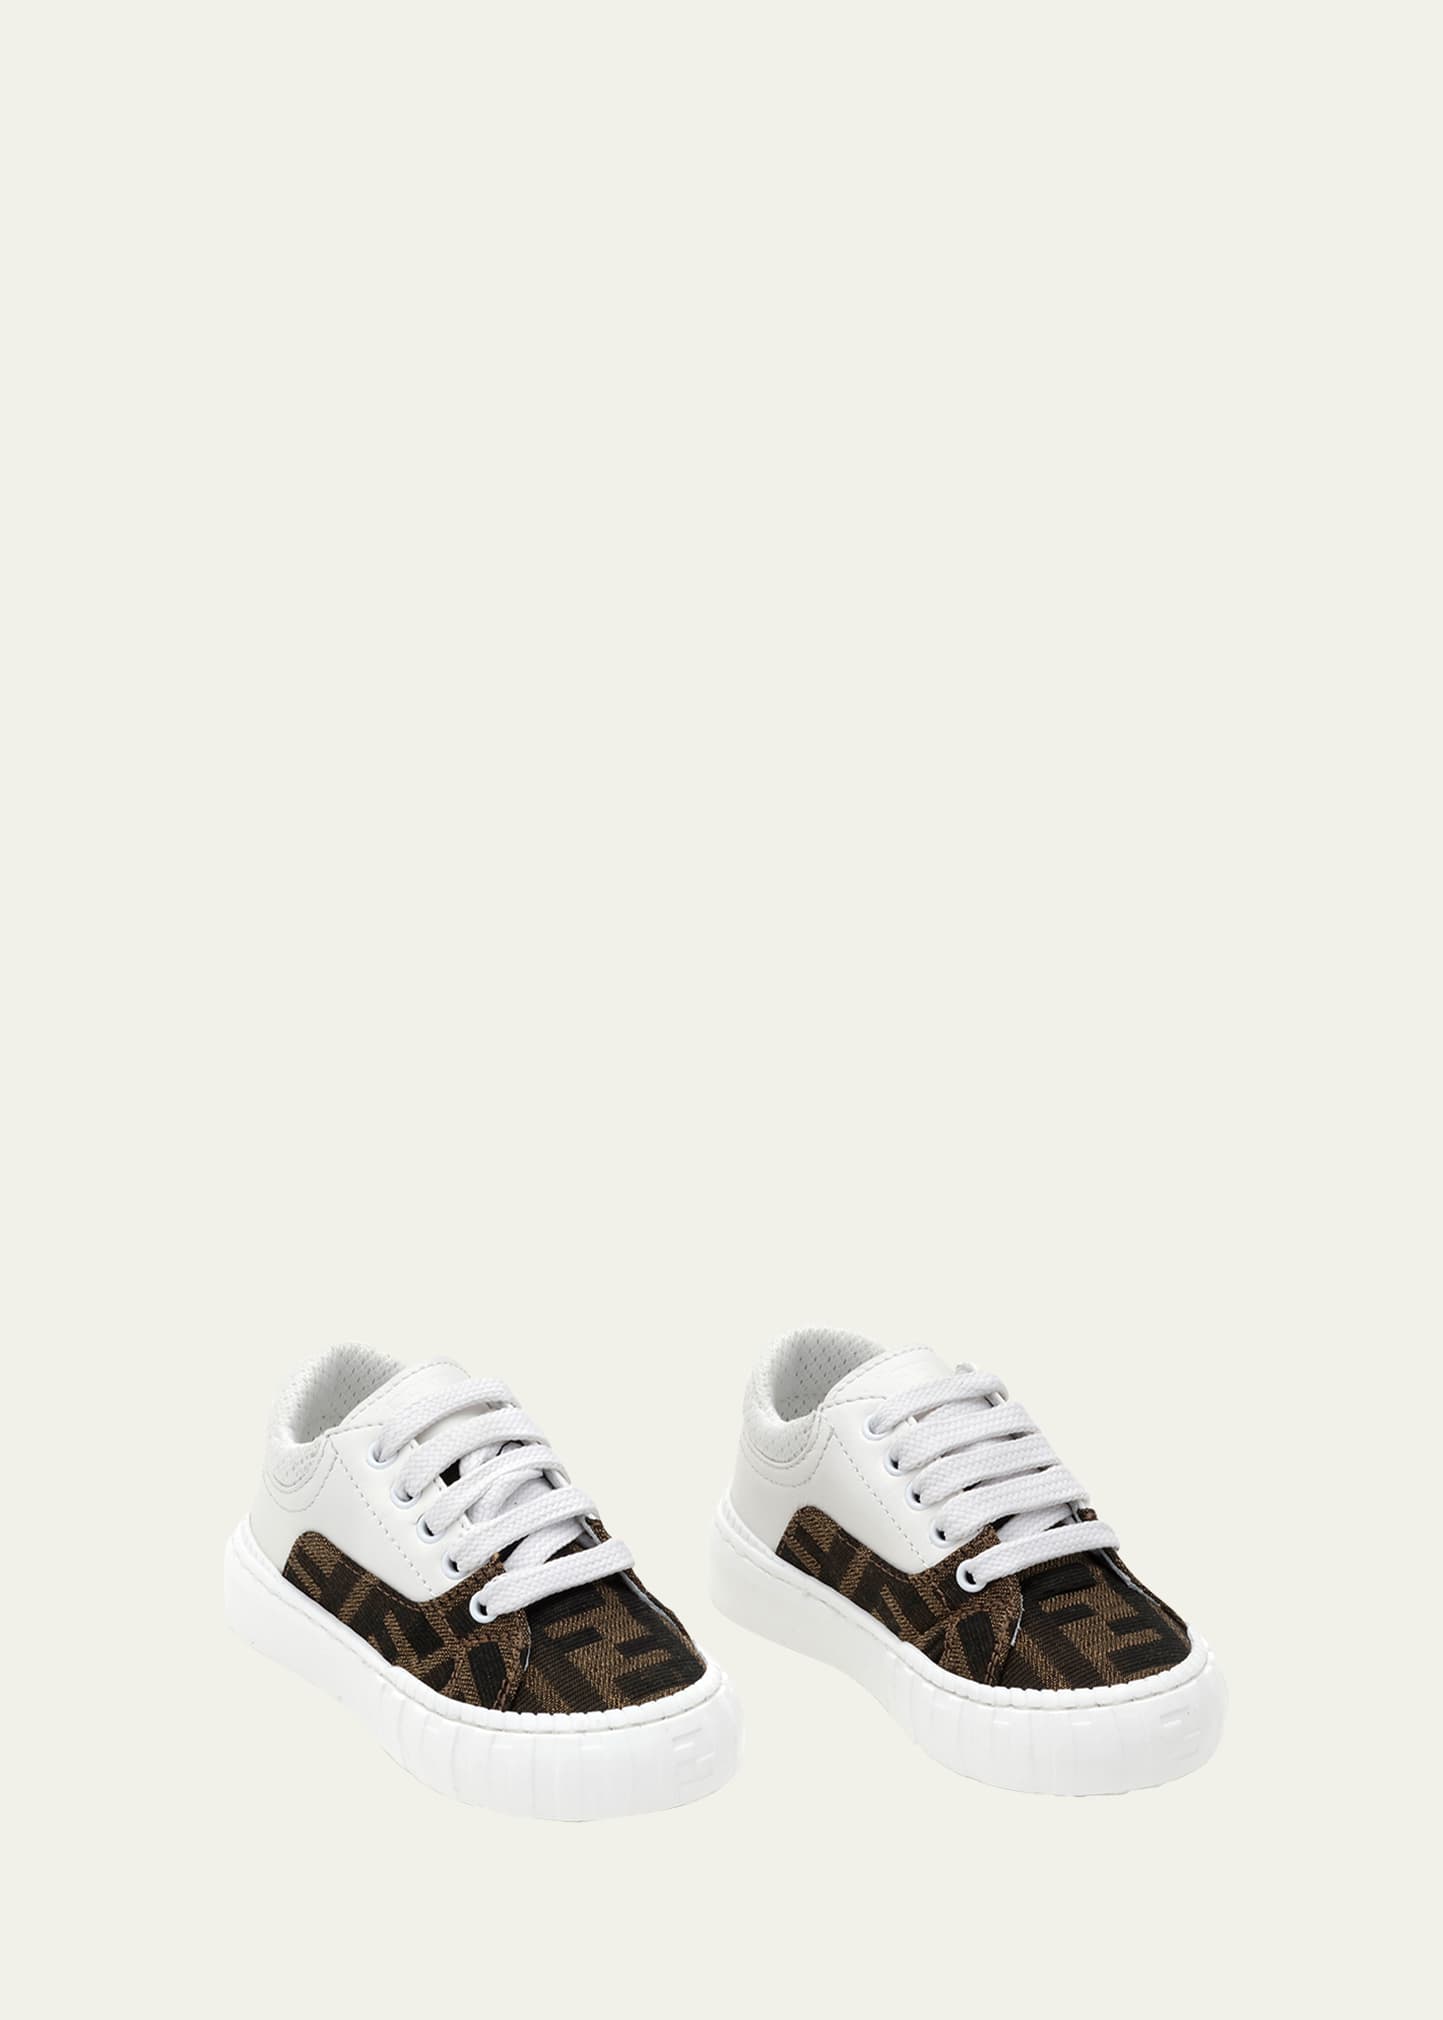 Fendi Kid's Logo Low-Top Sneakers, Size 31-34